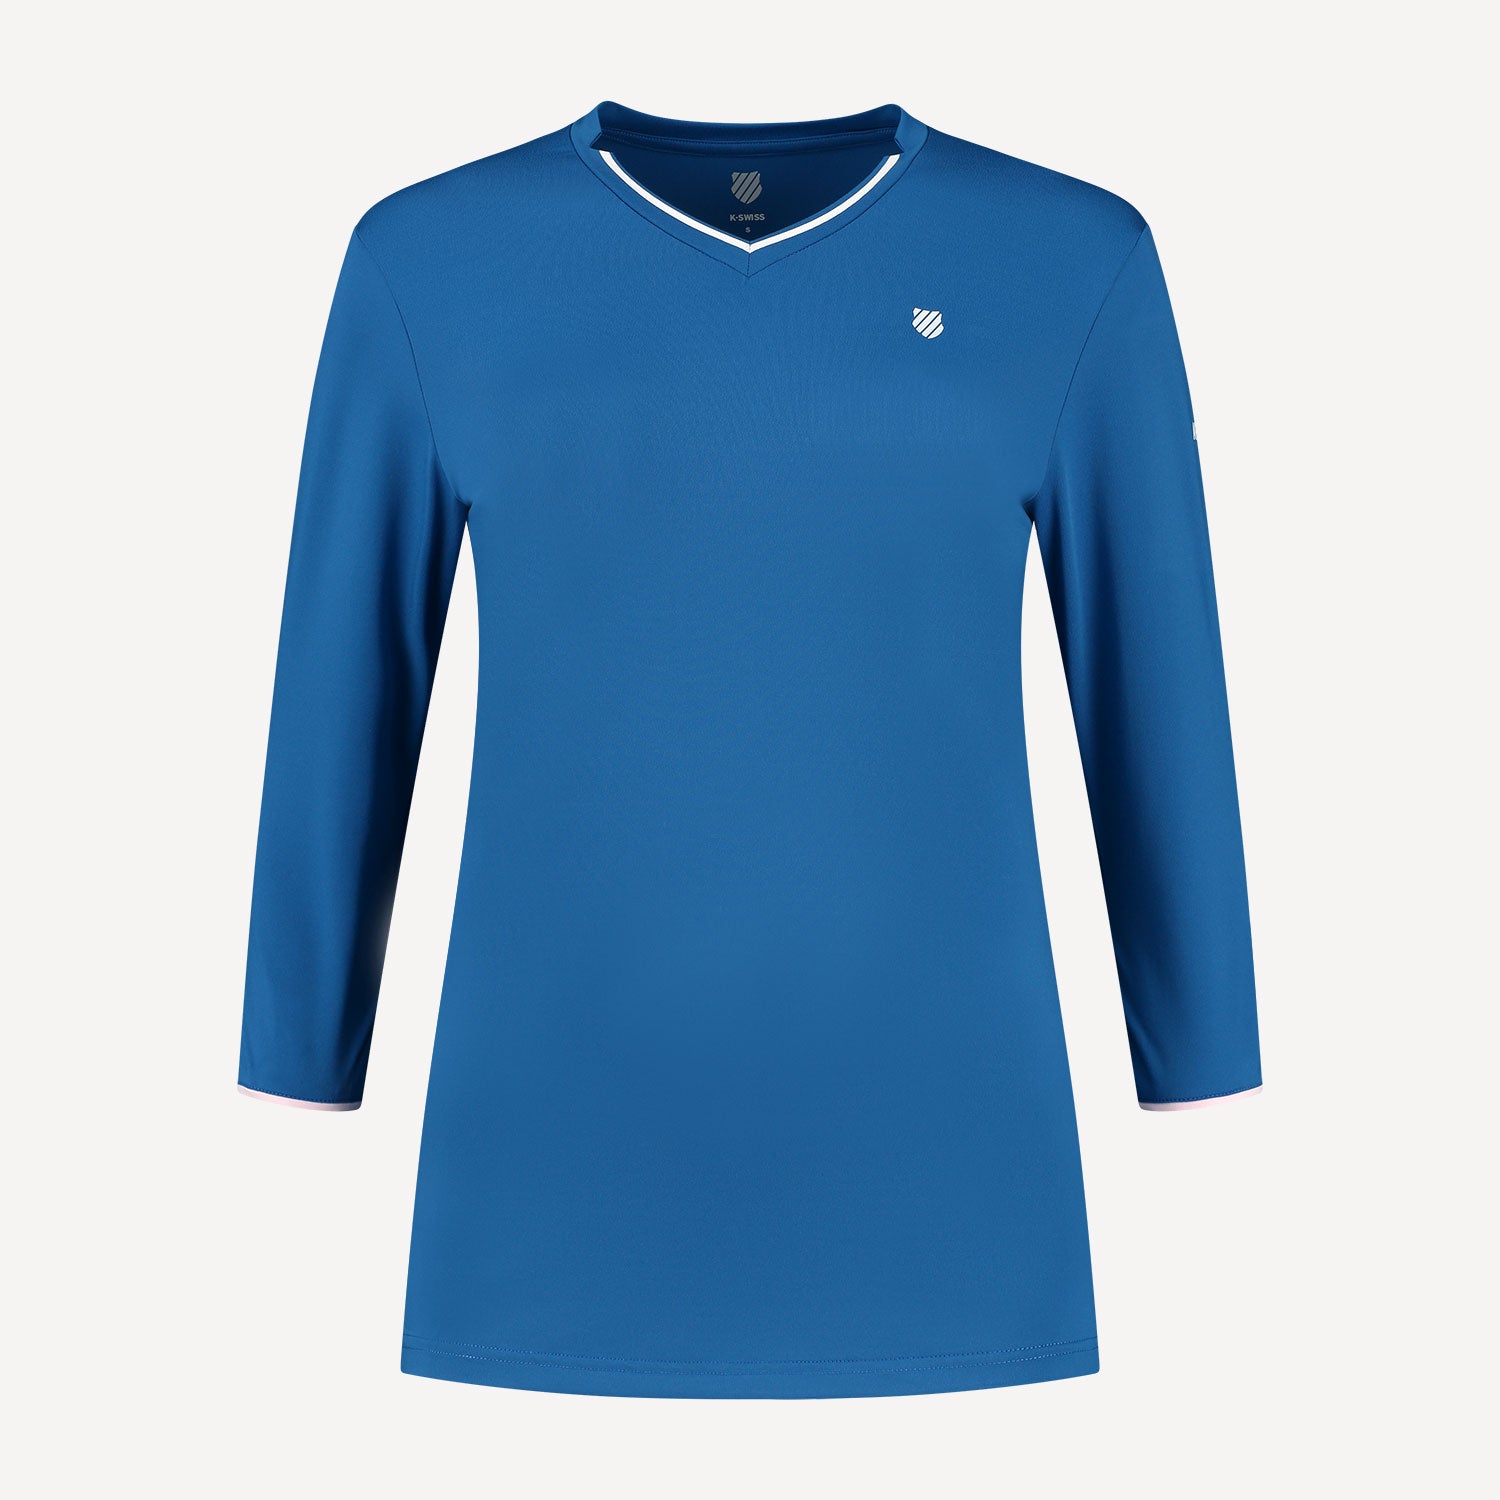 K-Swiss Hypercourt Women's Long-Sleeve Tennis Shirt Blue (1)